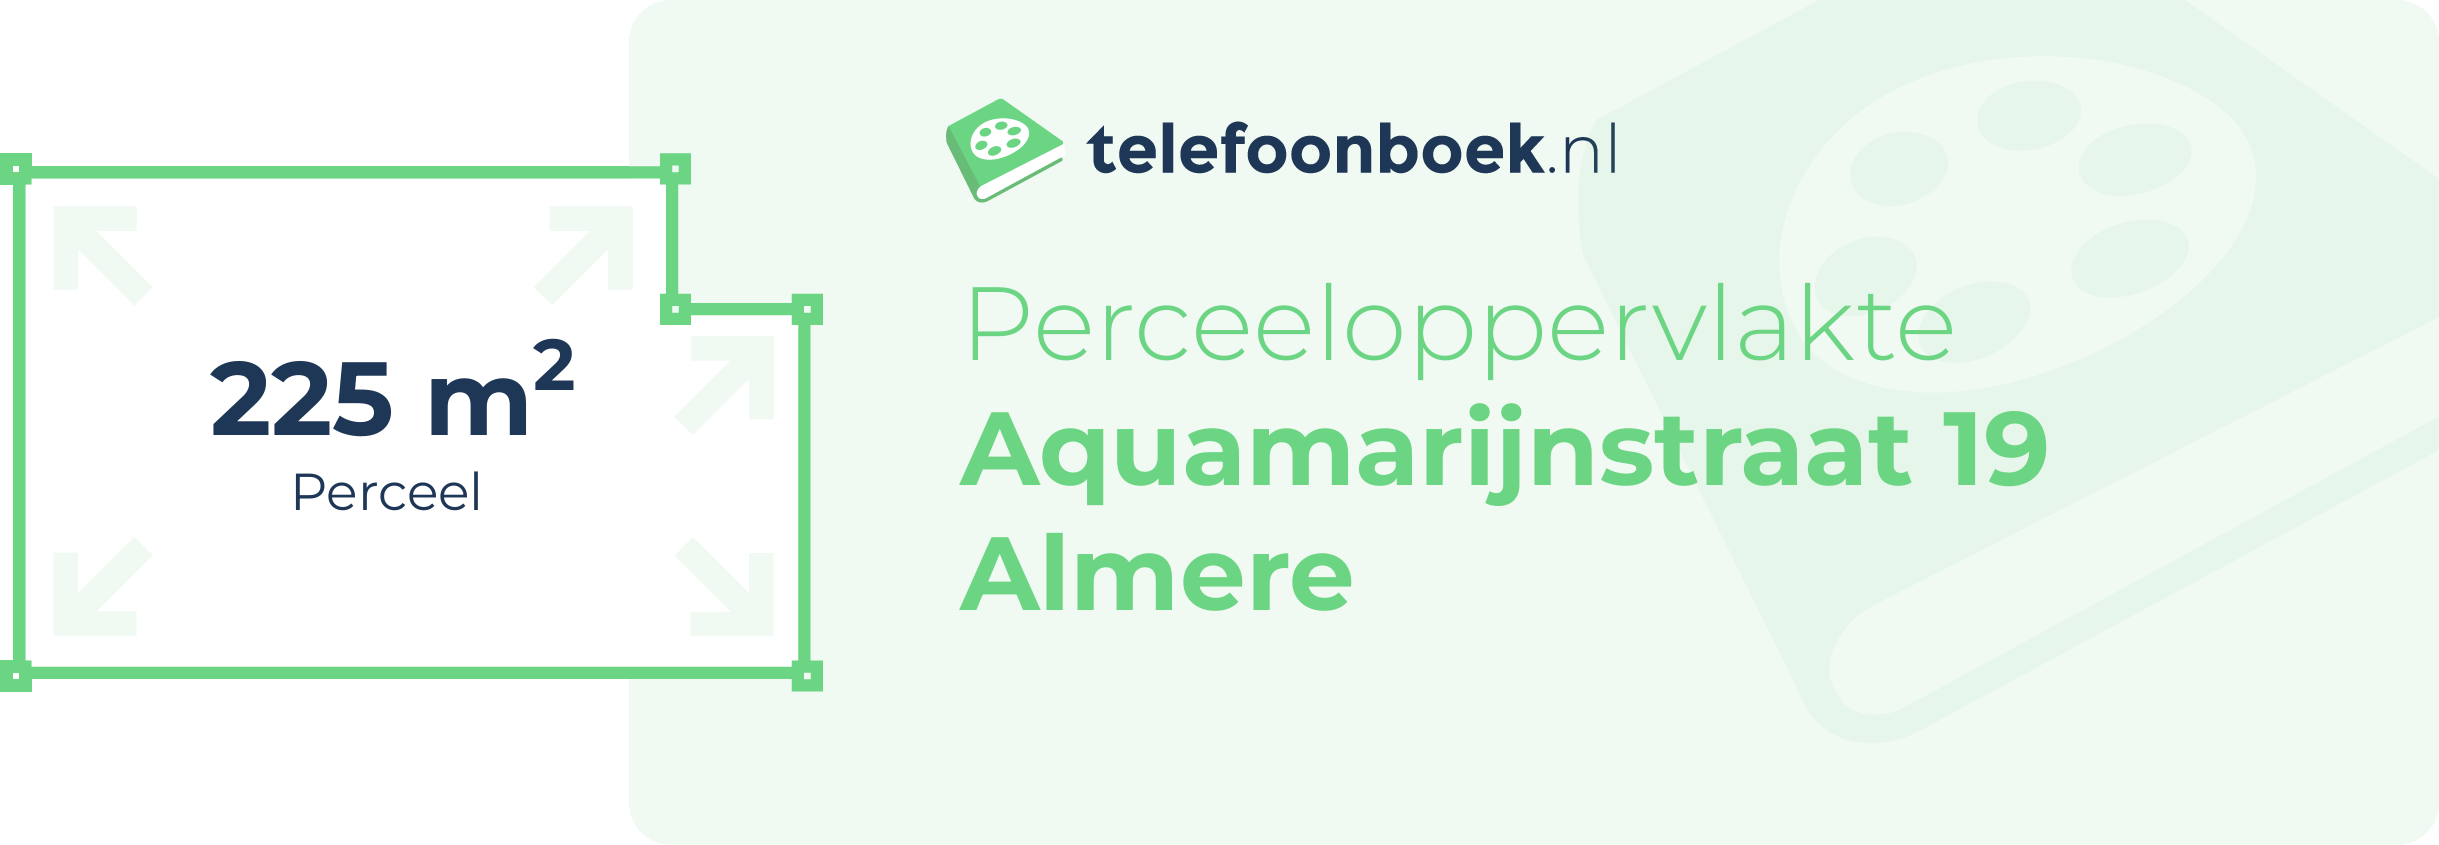 Perceeloppervlakte Aquamarijnstraat 19 Almere